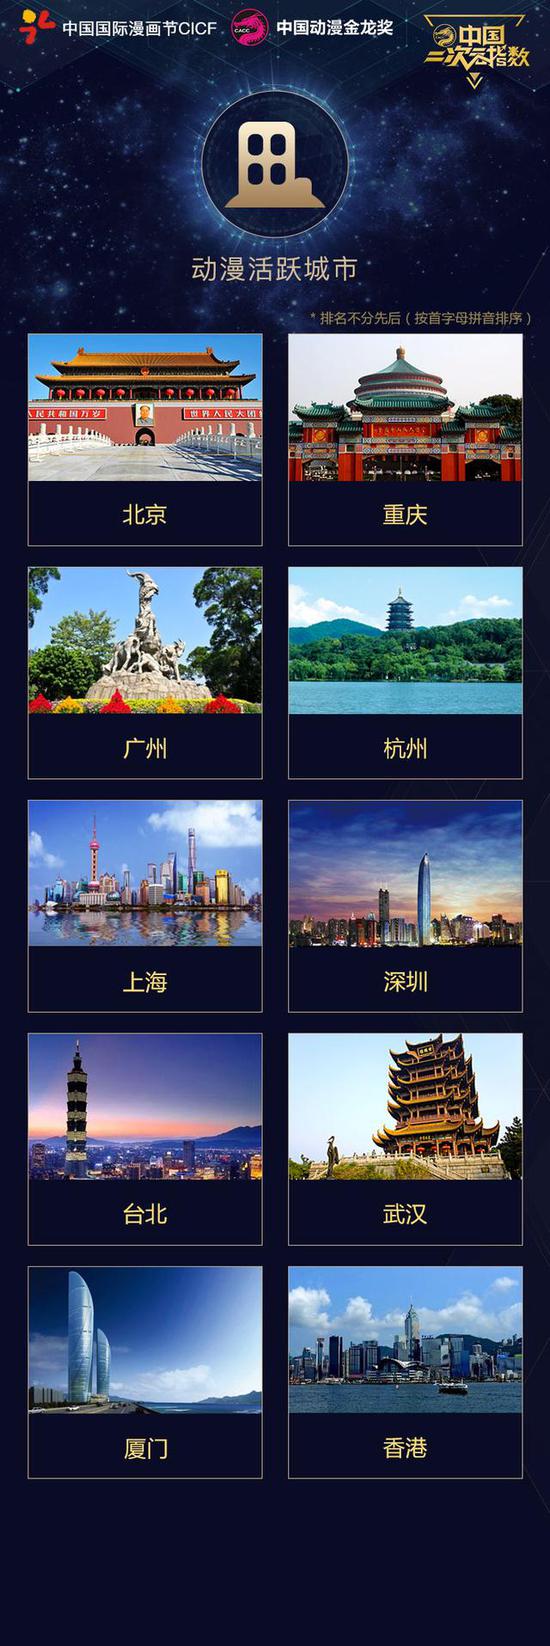 中国二次元指数年度榜单发布 北上广成大赢家